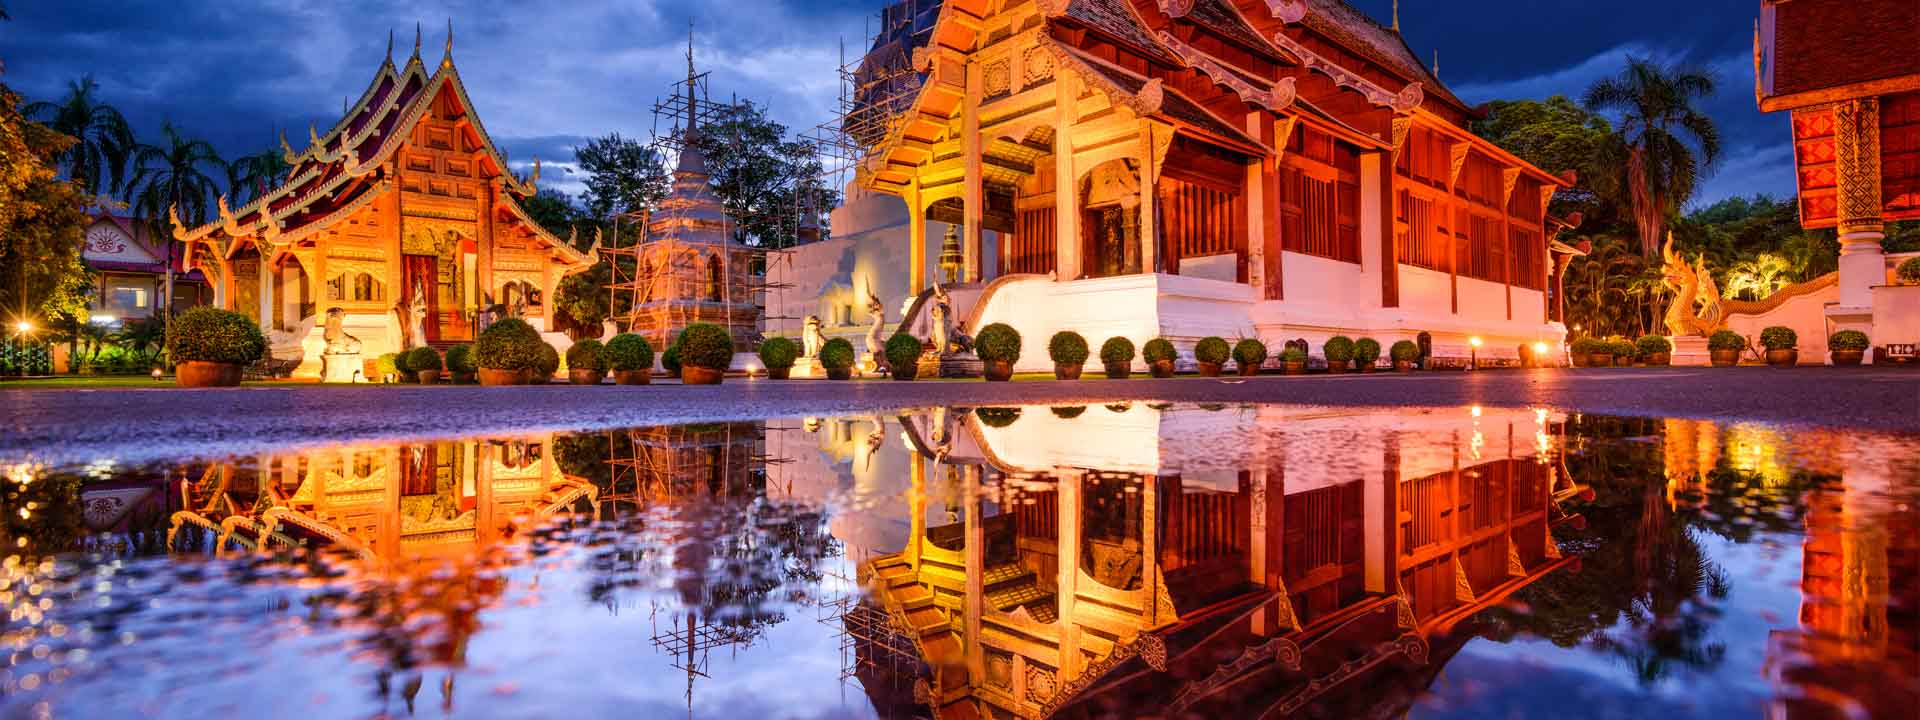 Verano inolvidable en Vietnam - Siem Reap y Tailandia 21 días